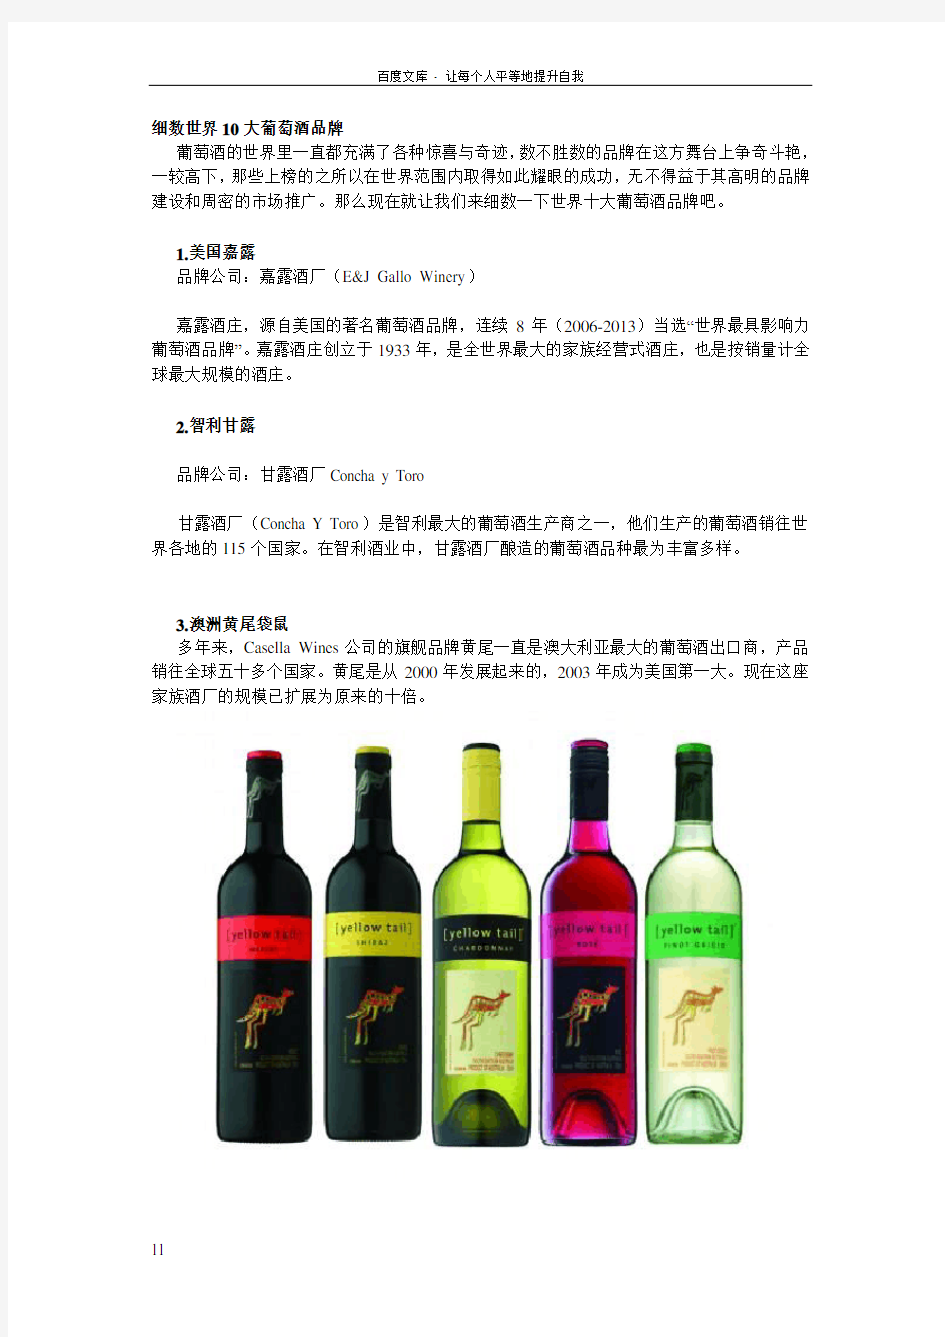 世界10大葡萄酒品牌详细介绍